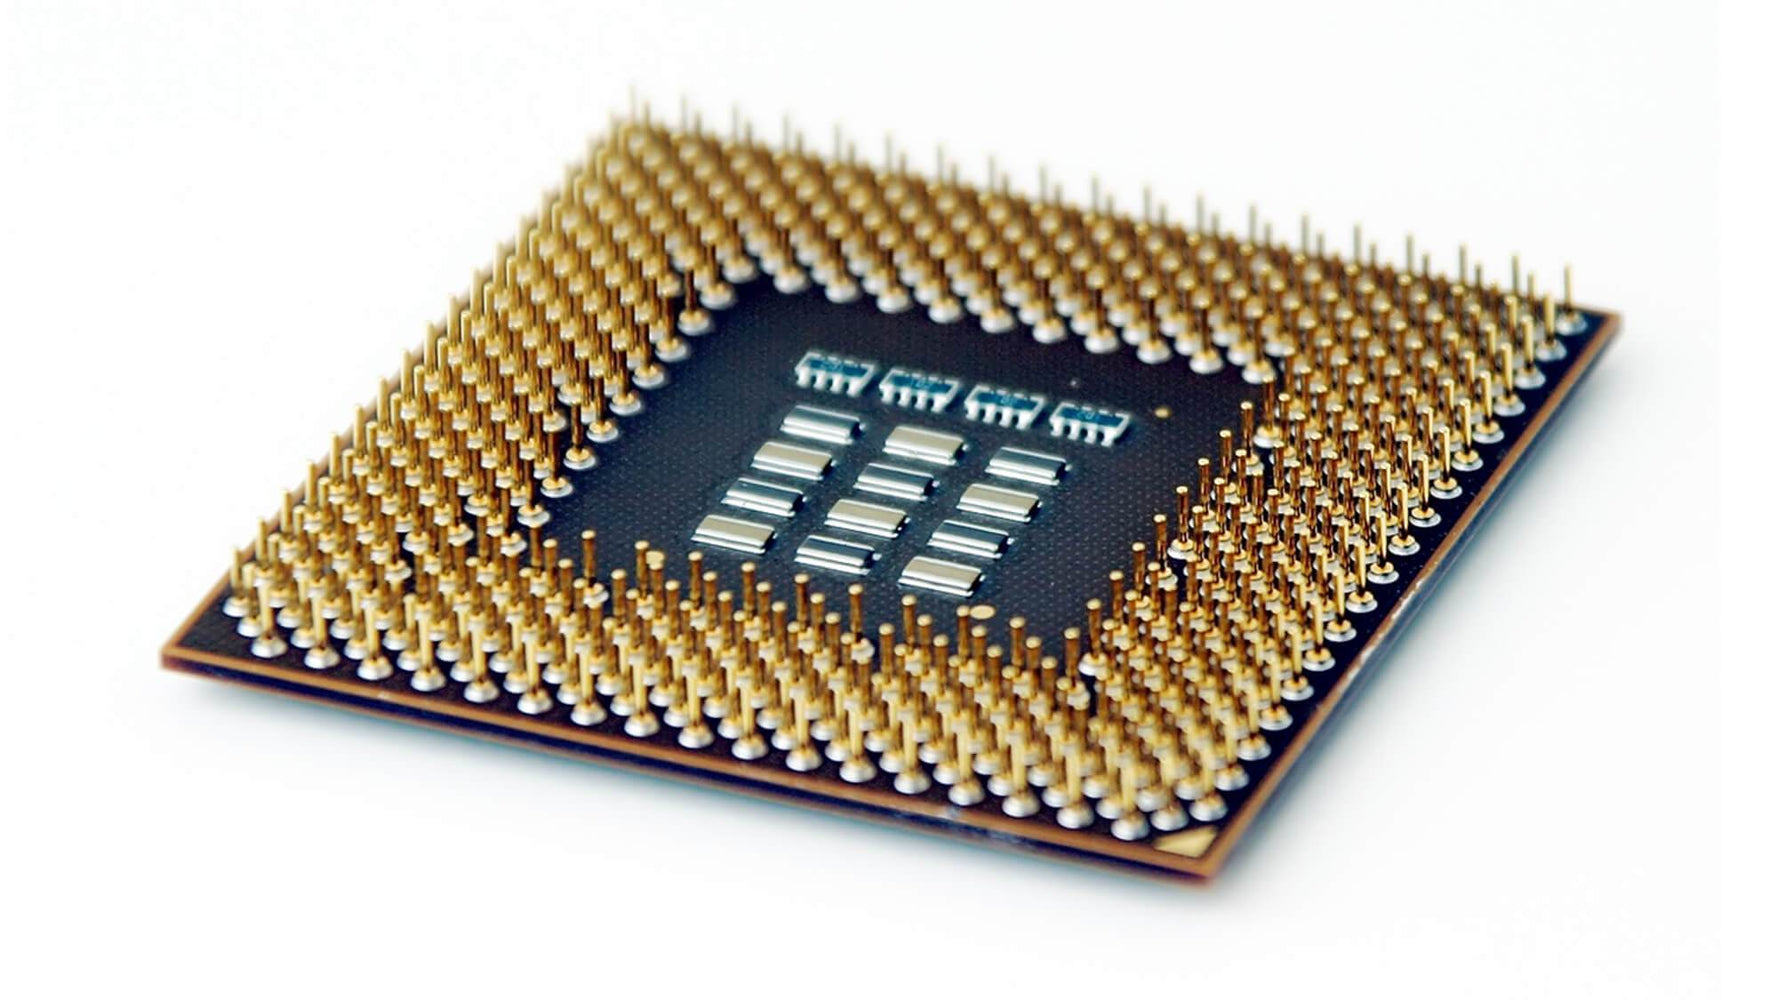 WMESL7PM - Gateway 3.00GHz 800MHz FSB 1MB L2 Cache Socket PGA478 Intel Pentium 4 1-Core Processor